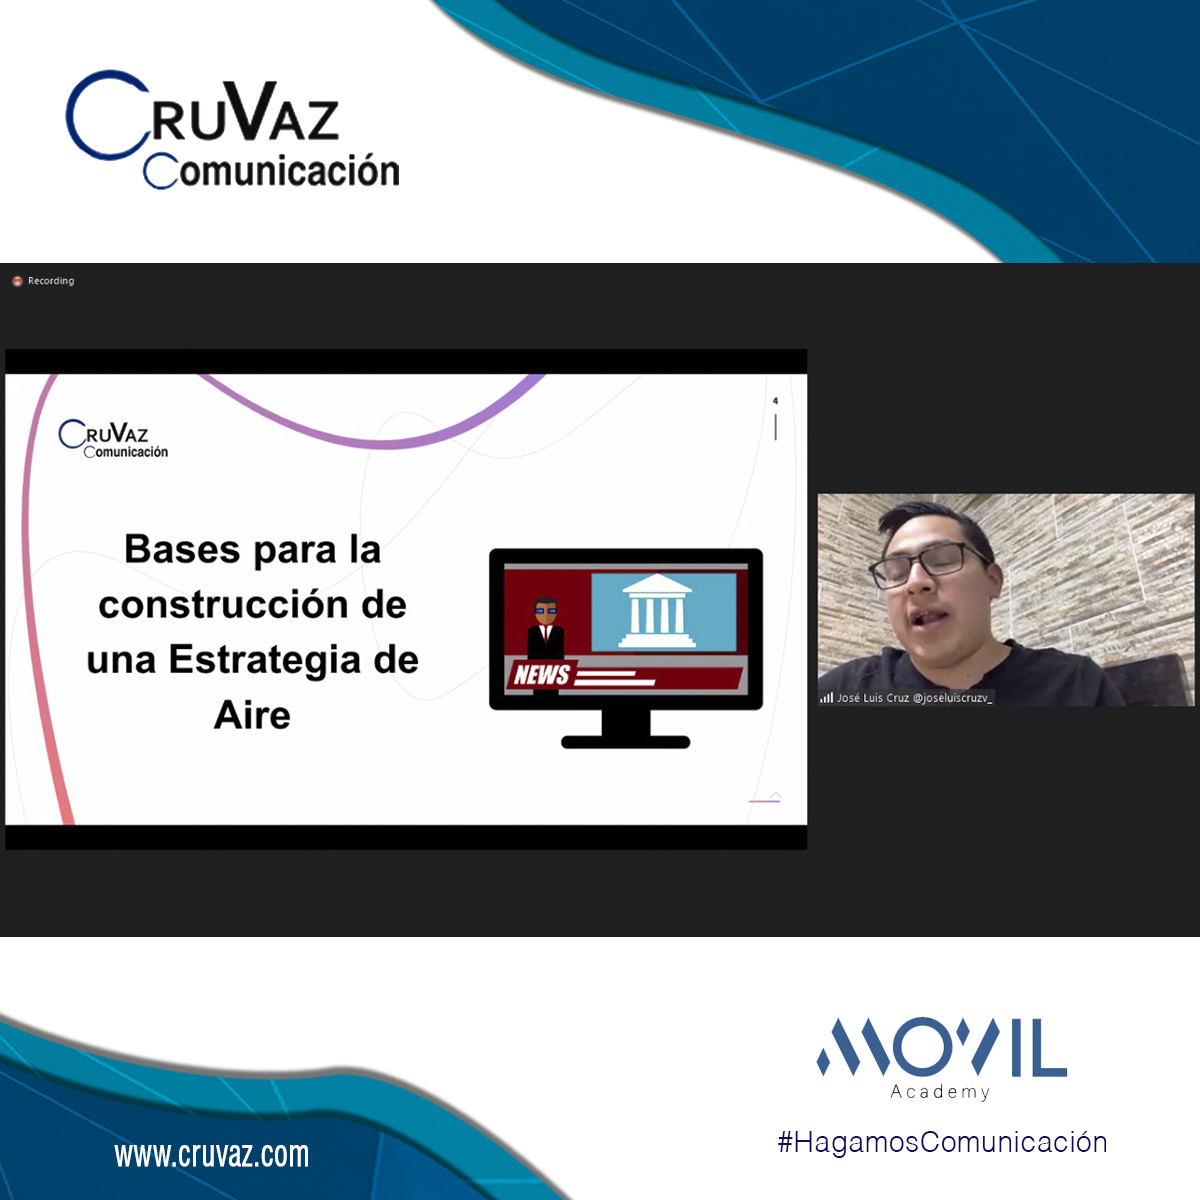 José Luis Cruz comparte elementos de una “estrategia de aire” rumbo a elección en curso de Movil Academy